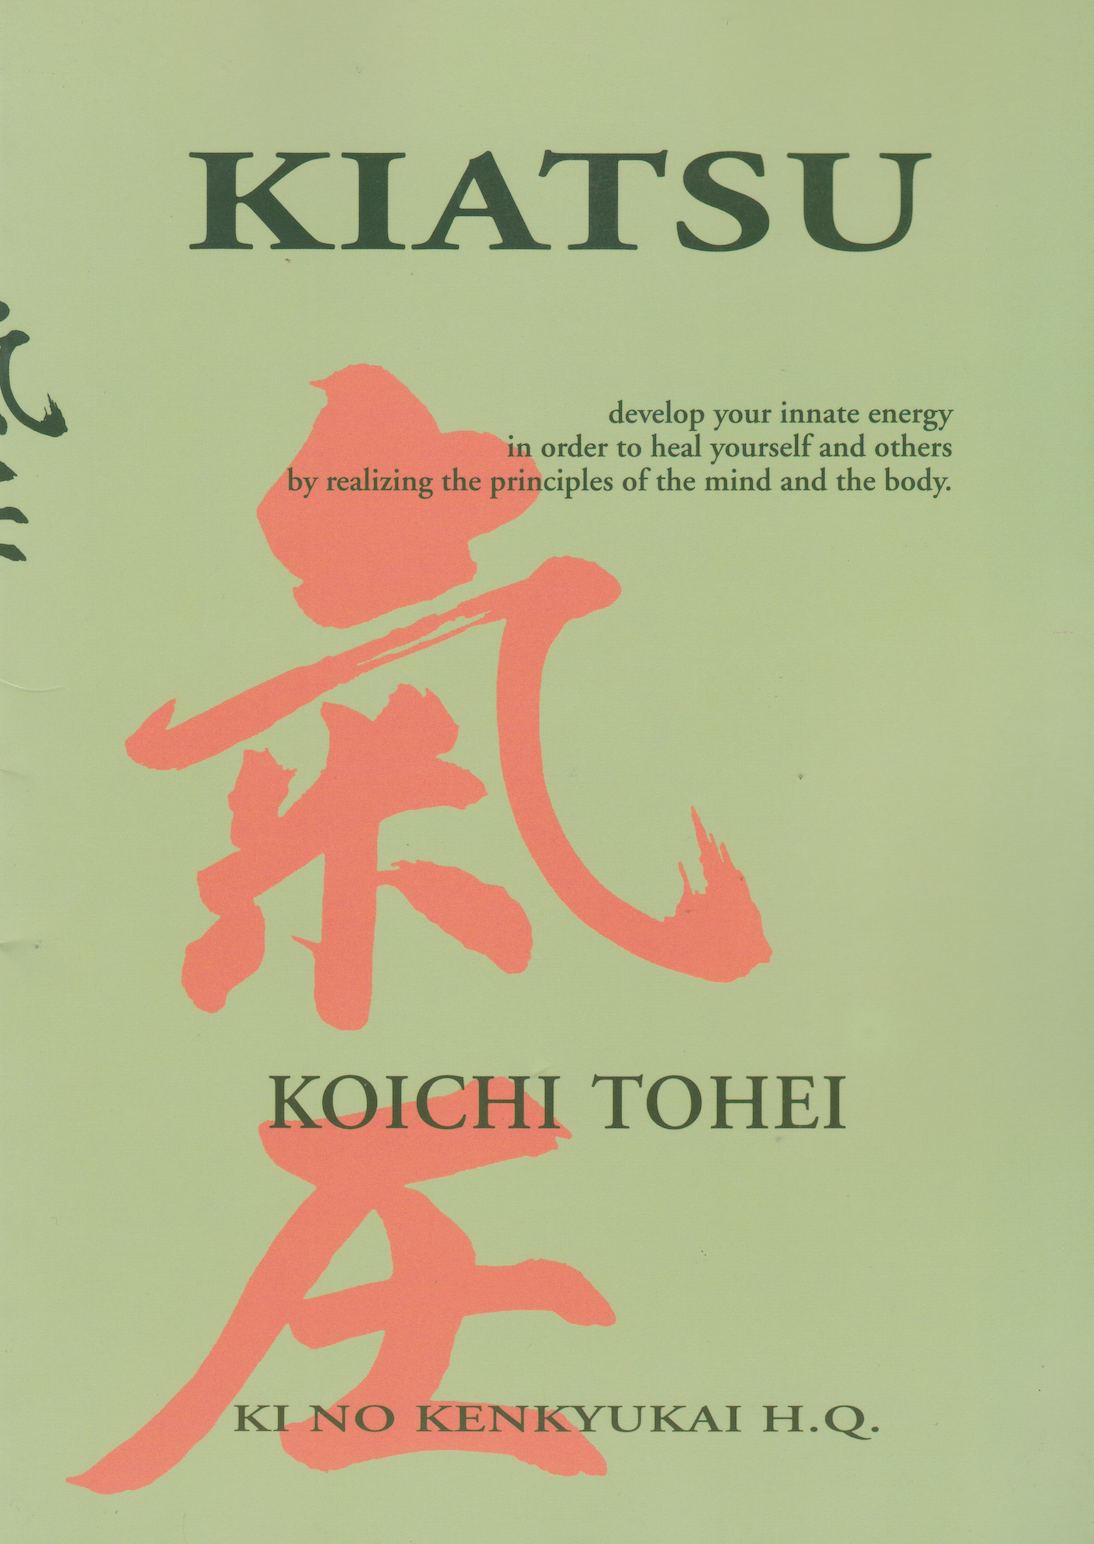 Kiatsu Massage Book(Revised Edition) By Koichi Tohei (Preowned) - Budovideos Inc